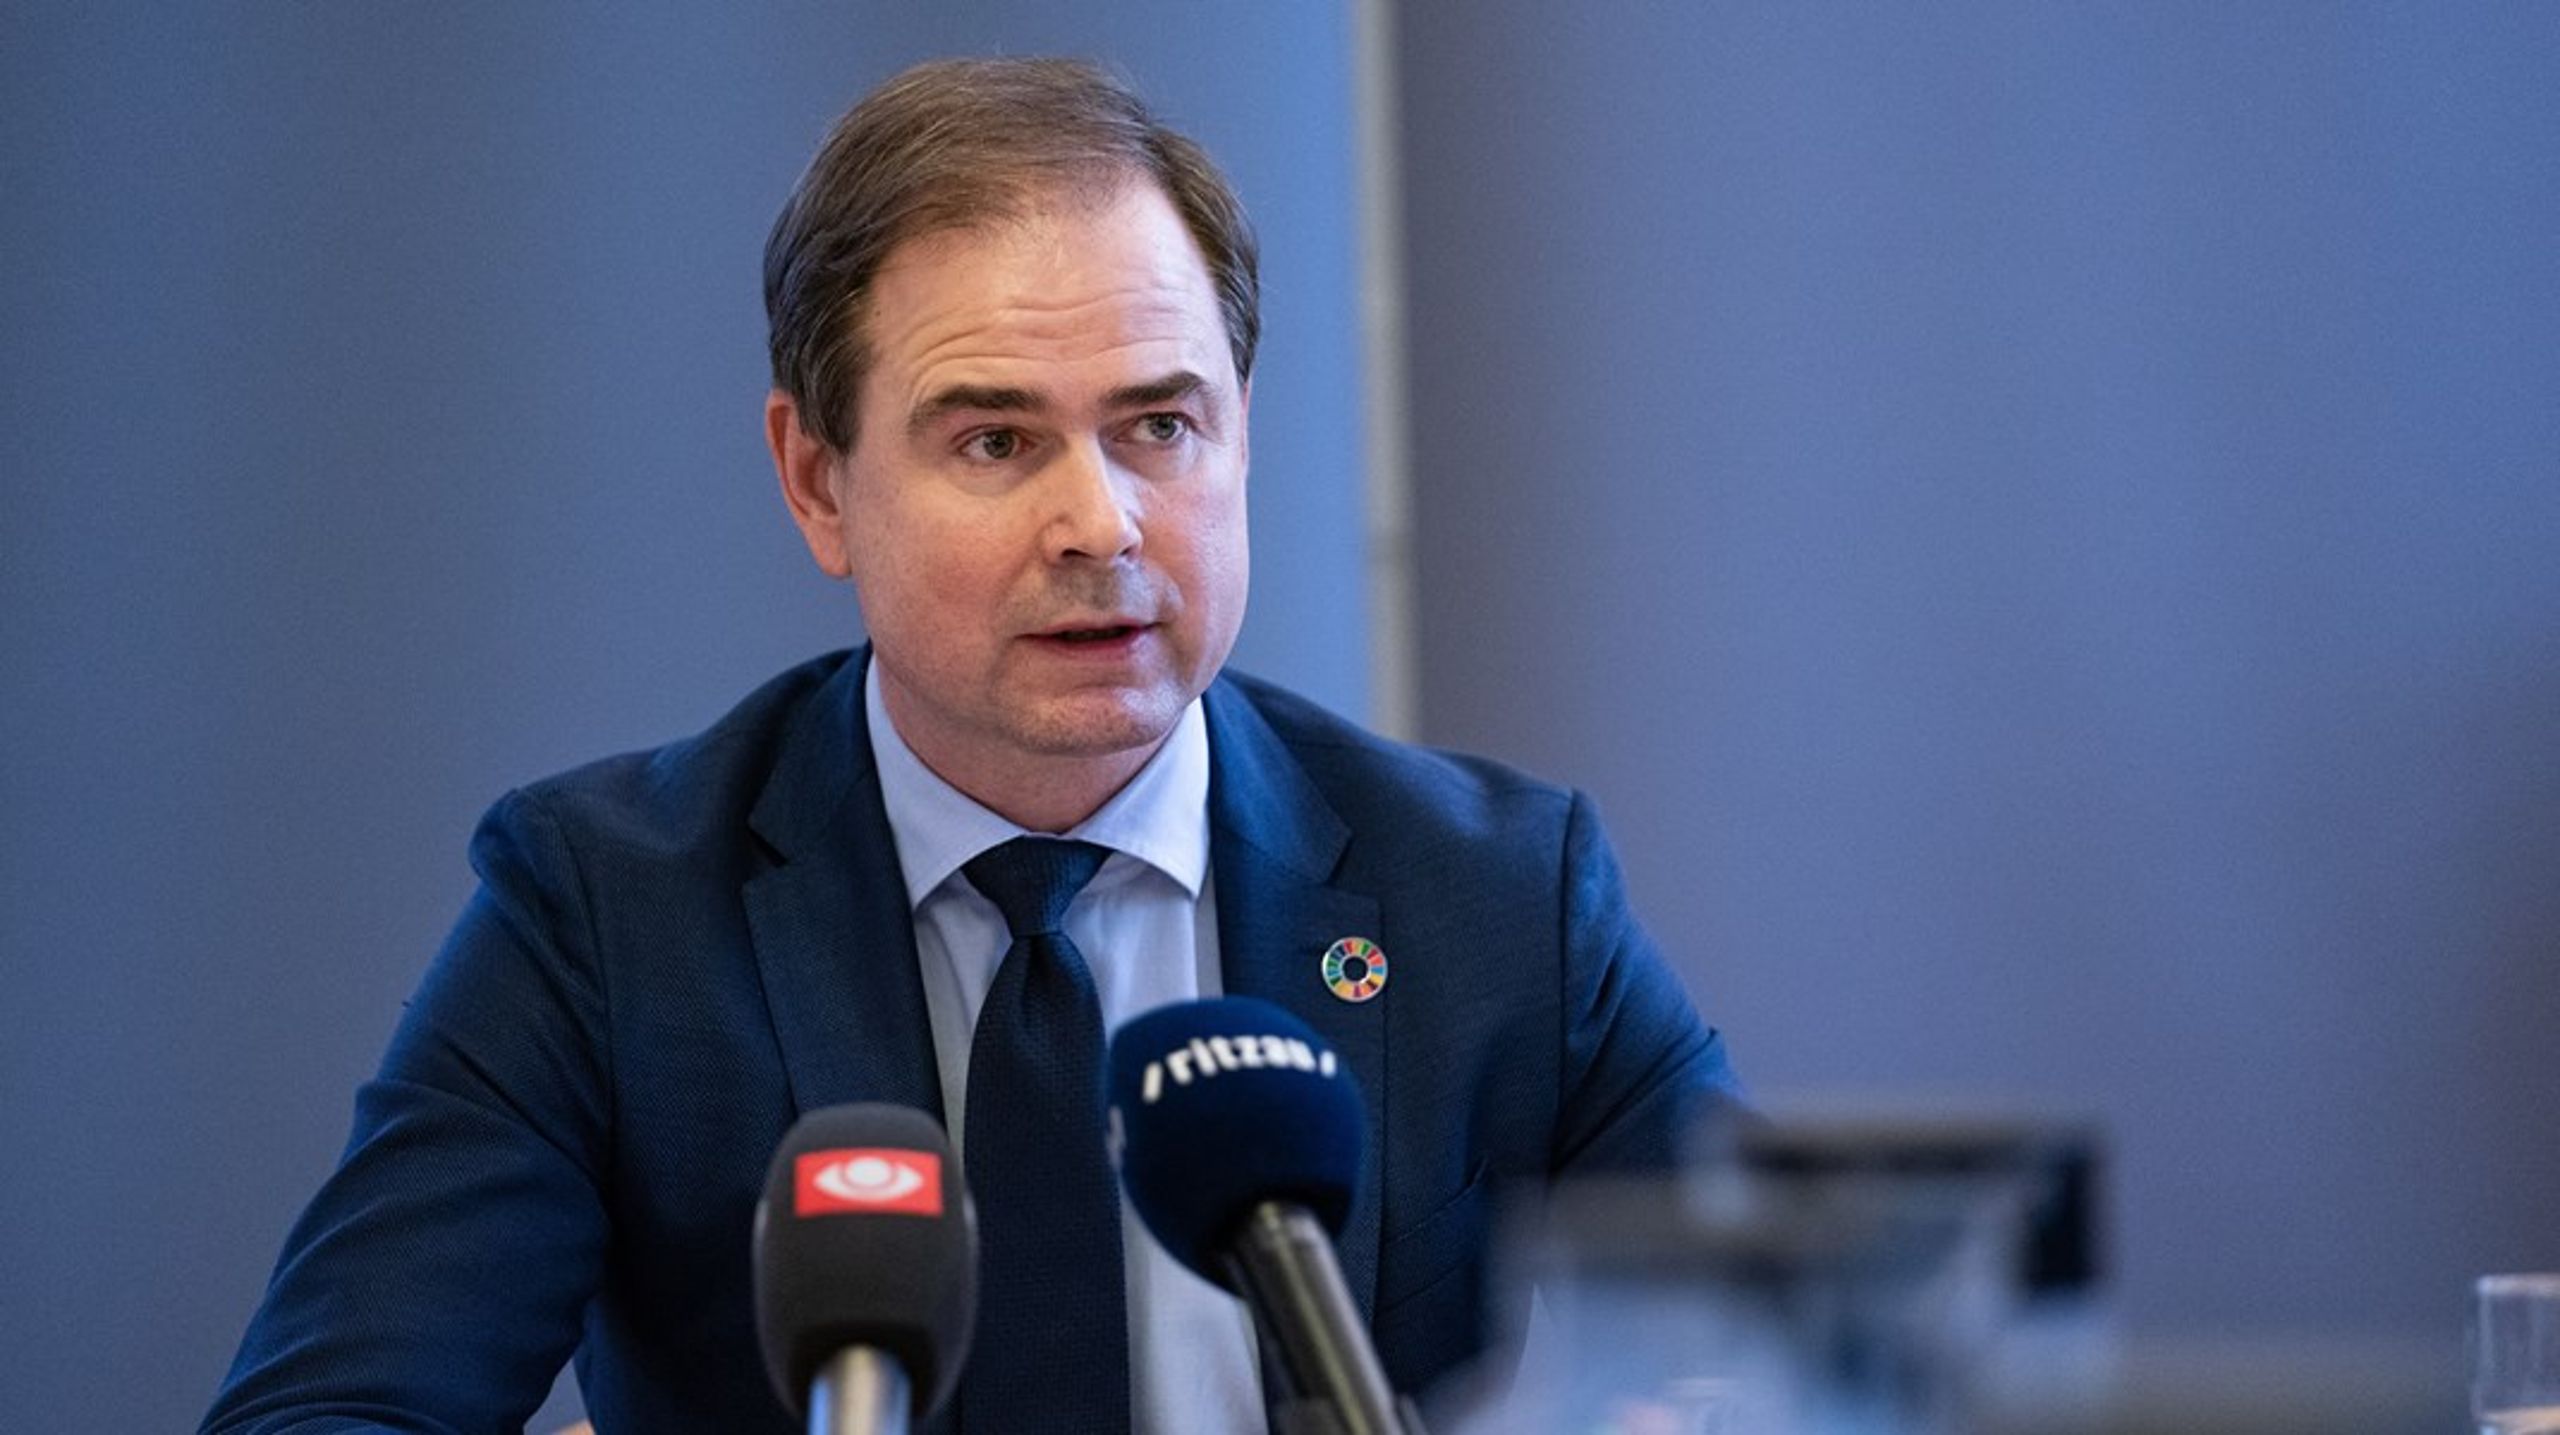 Flere lovforslag vil blive konsekvensvurderet fremover, siger finansminister Nicolai Wammen.